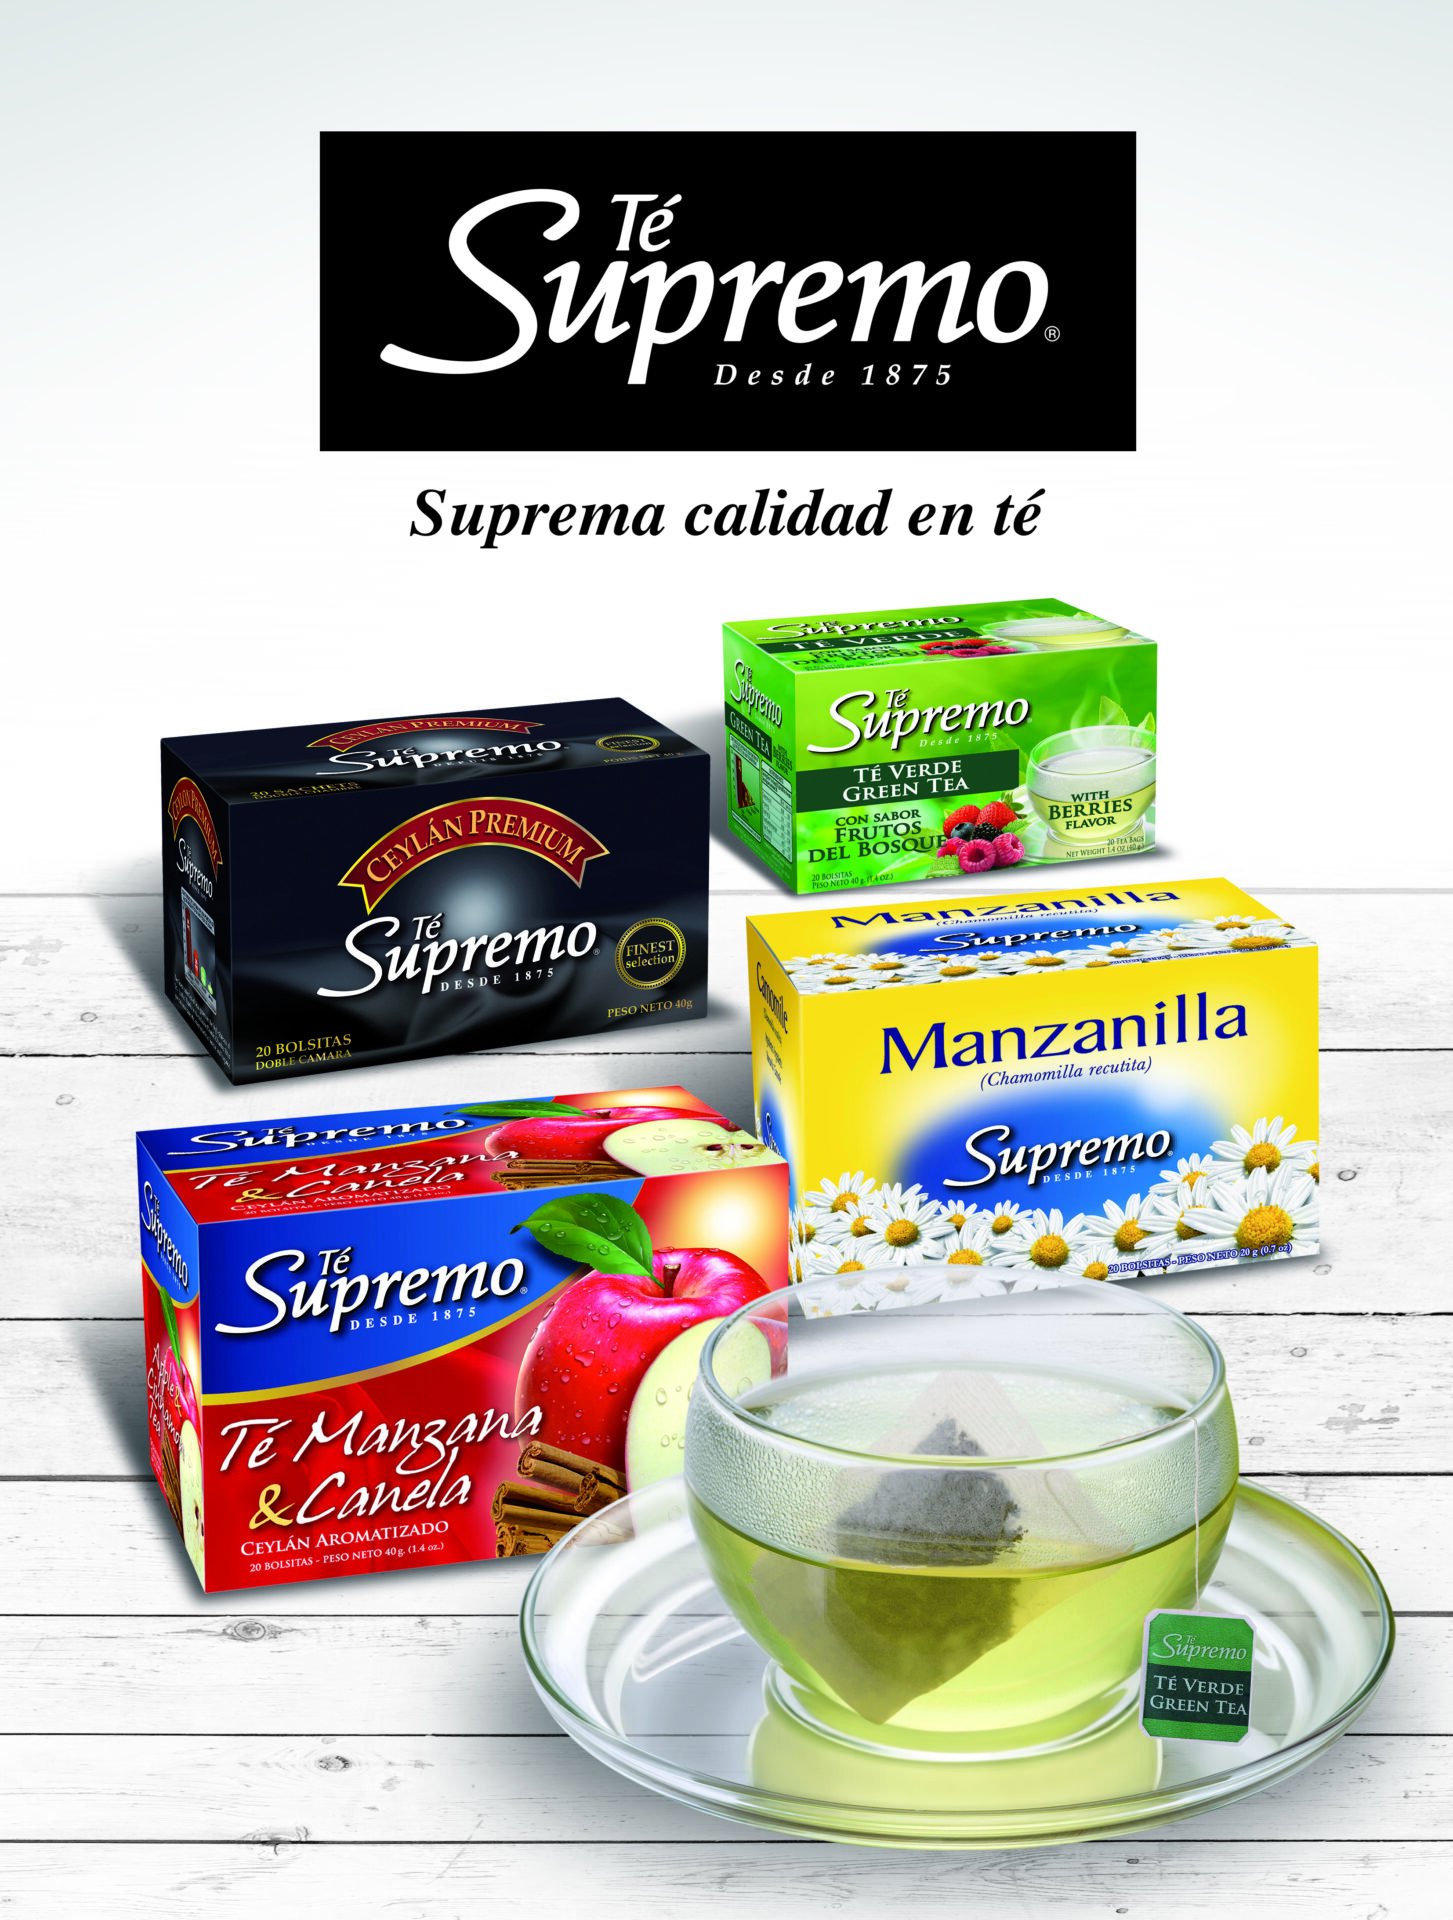 Nuevo té Supremo, la tradición chilena en la mesa de los costarricenses